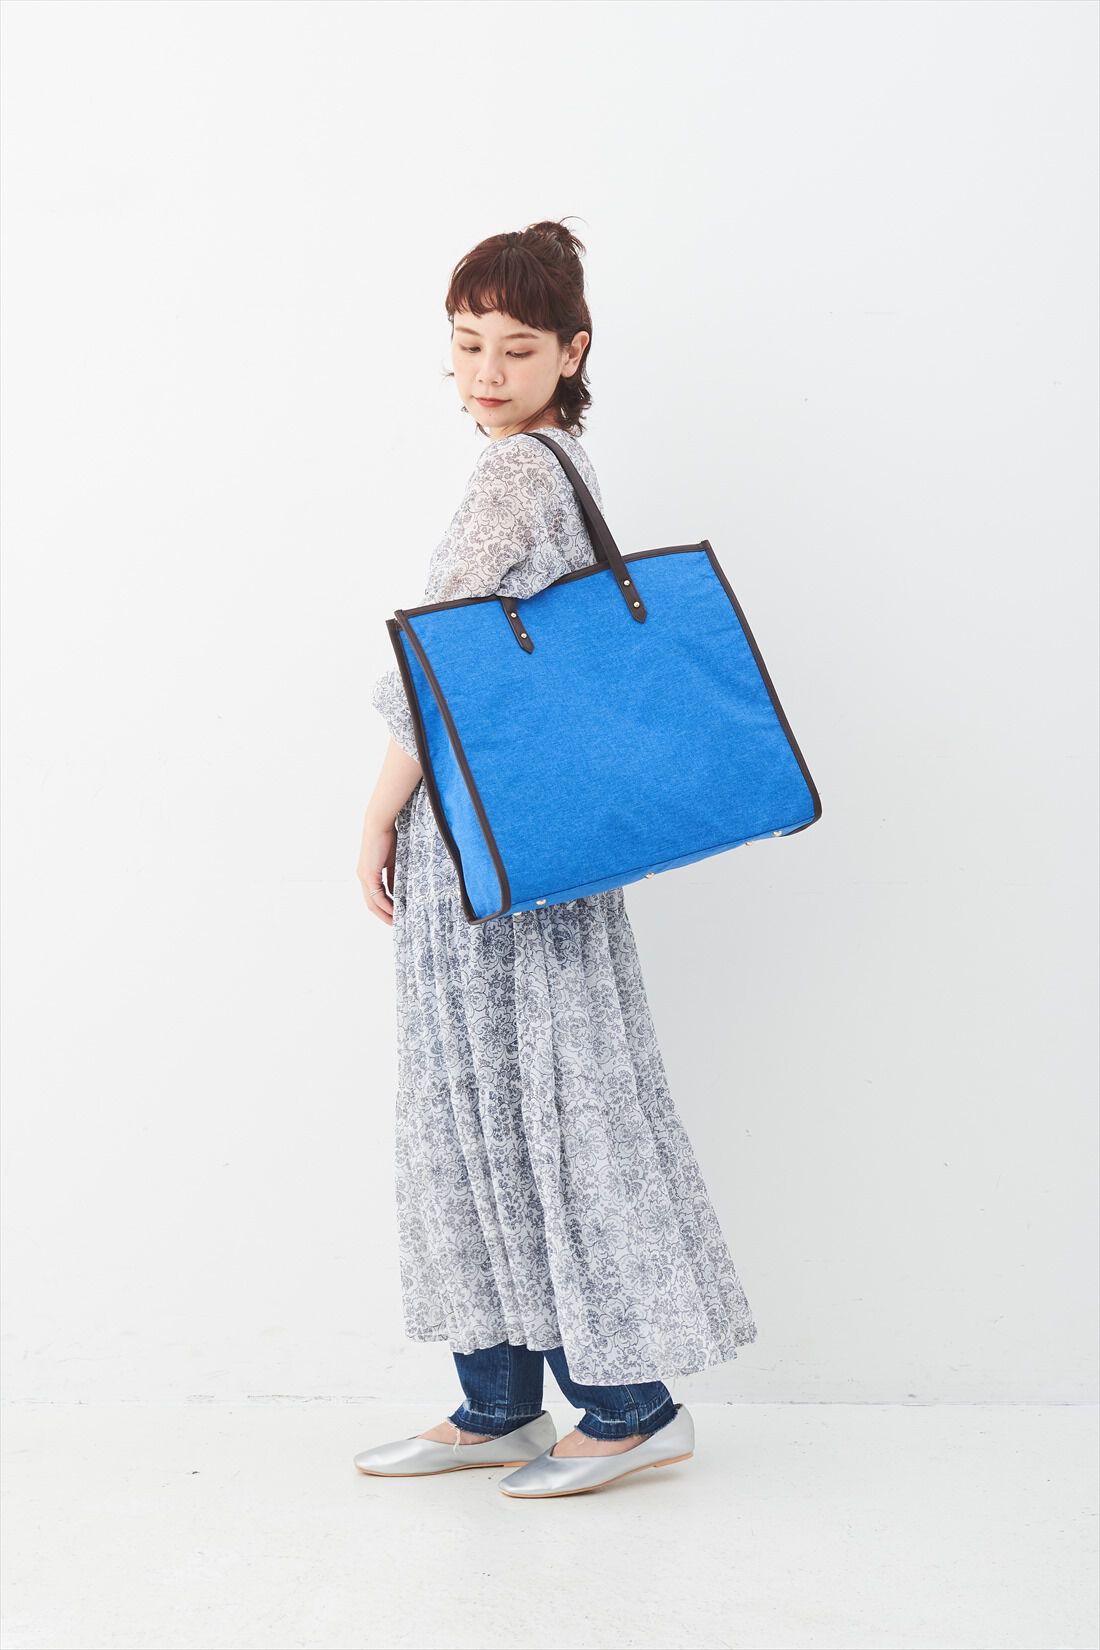 OSYAIRO|OSYAIRO ジャンボうちわが入るパイピングトートバッグ〈ブルー〉|持った時のサイズ感はこれくらい。肩かけもOK。